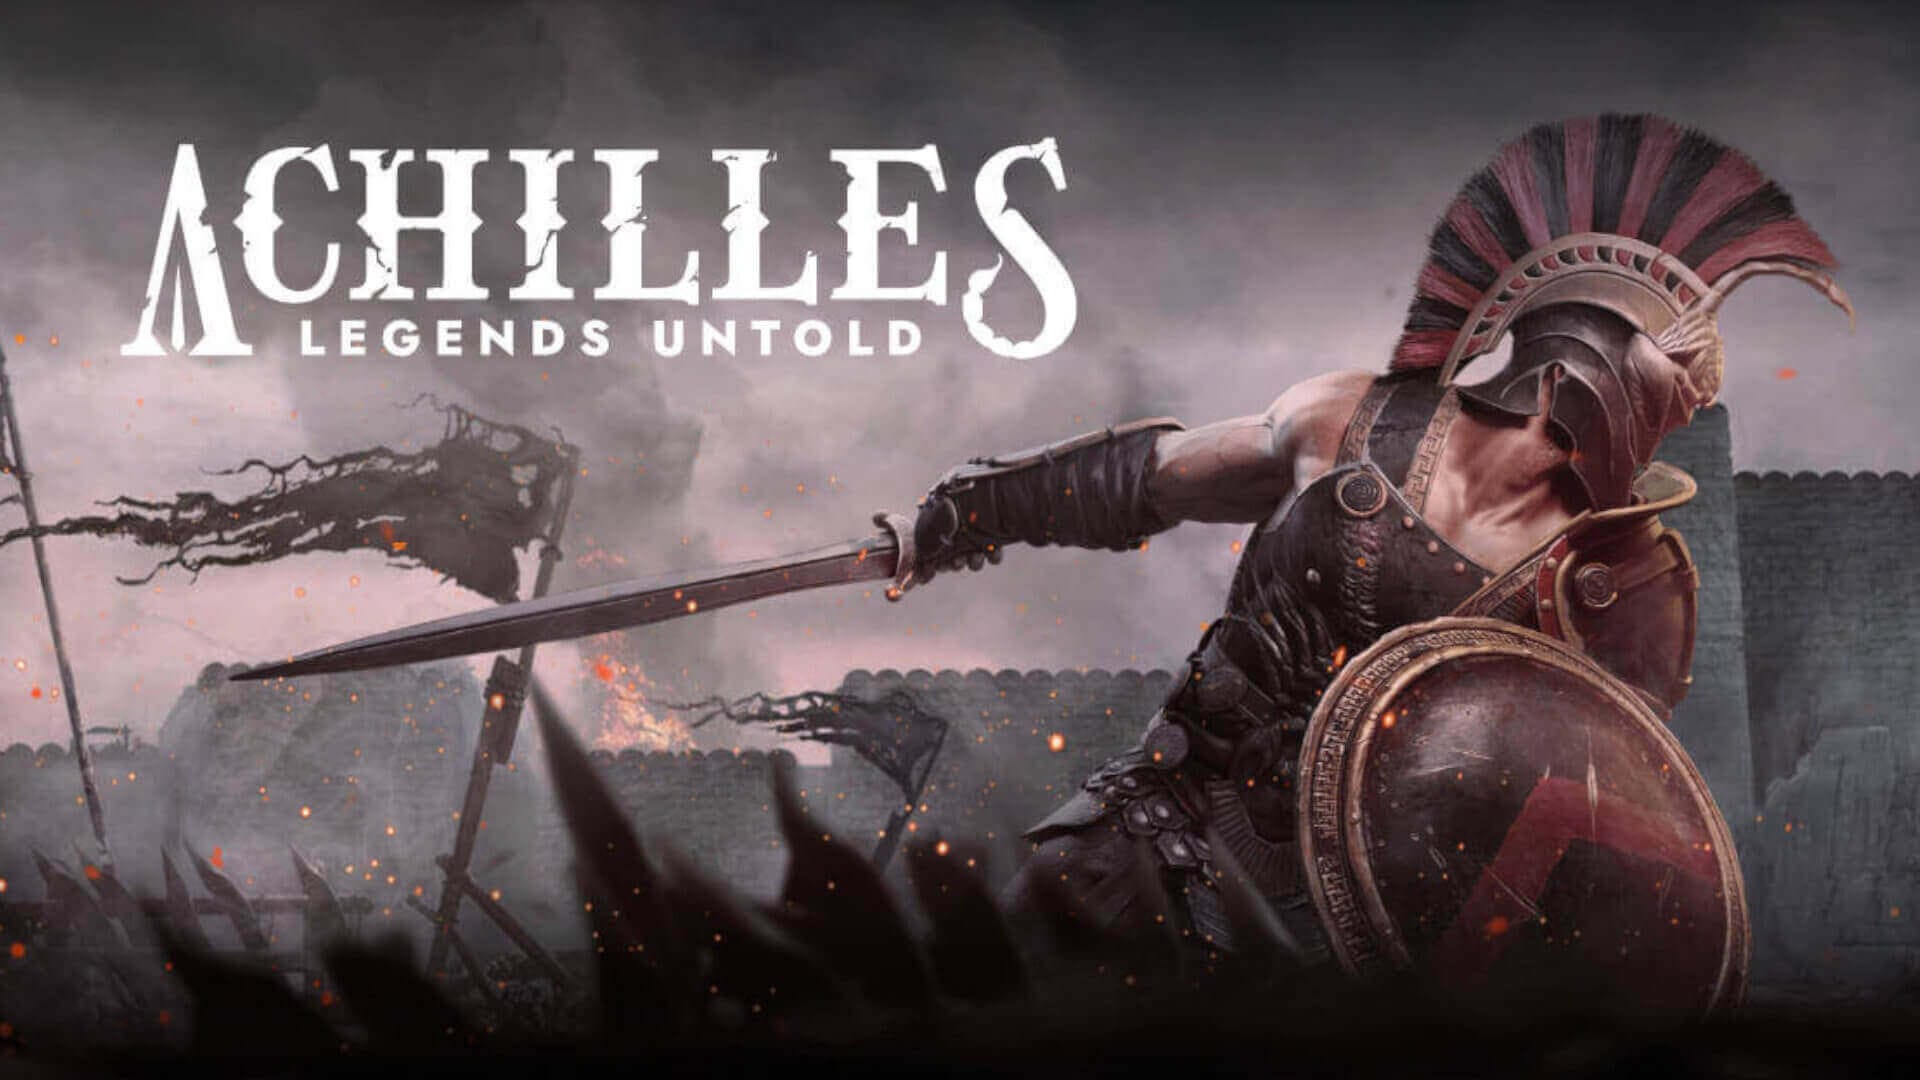 Achilles: Legends Untold News, Reviews, and Guides | TechRaptor